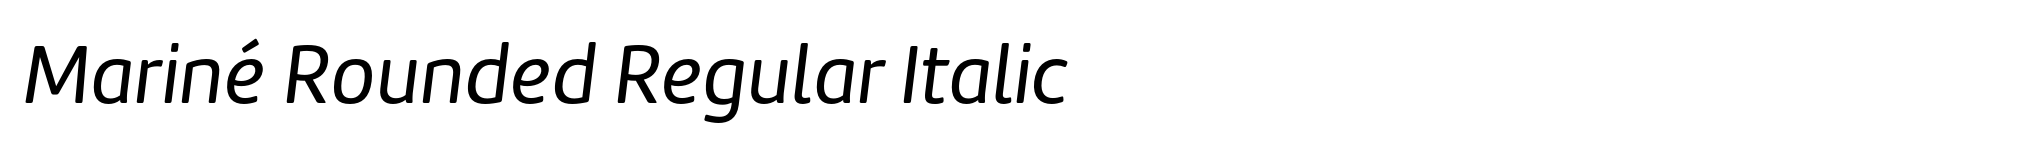 Mariné Rounded Regular Italic image